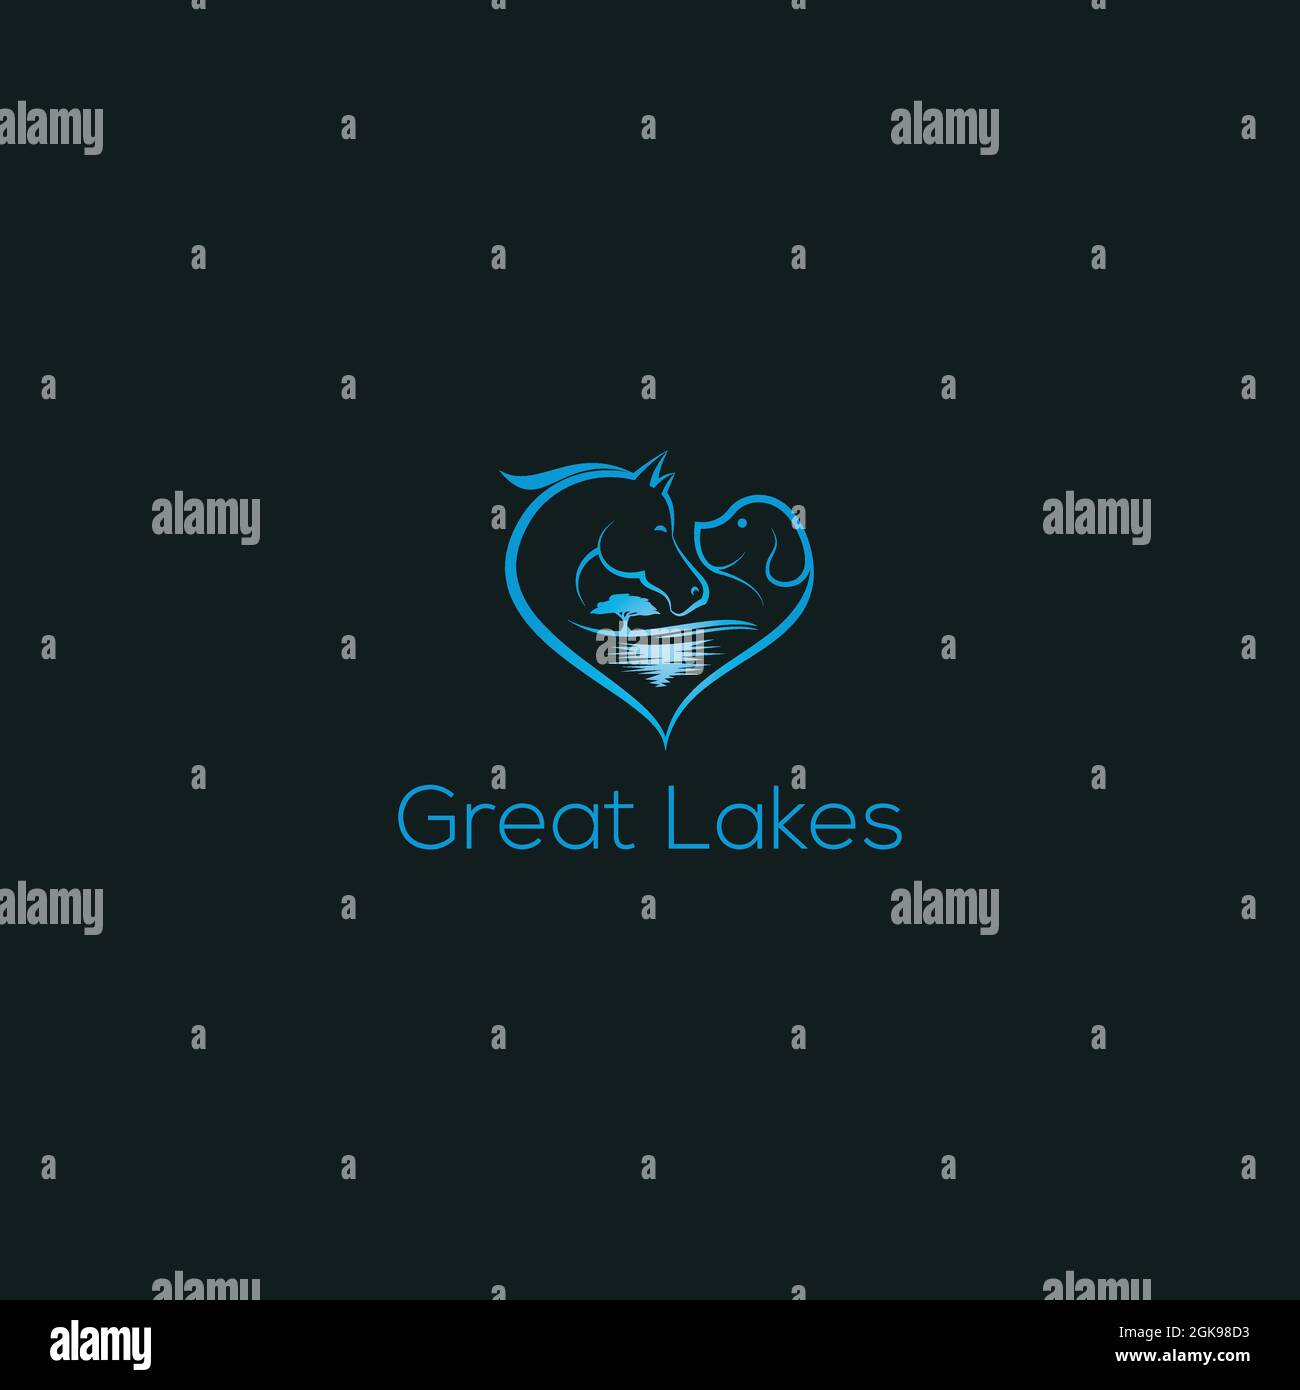 Ci sono cavallo , cane, onda, albero, e l'amore combinati per fare il logo Great Lake. Illustrazione Vettoriale